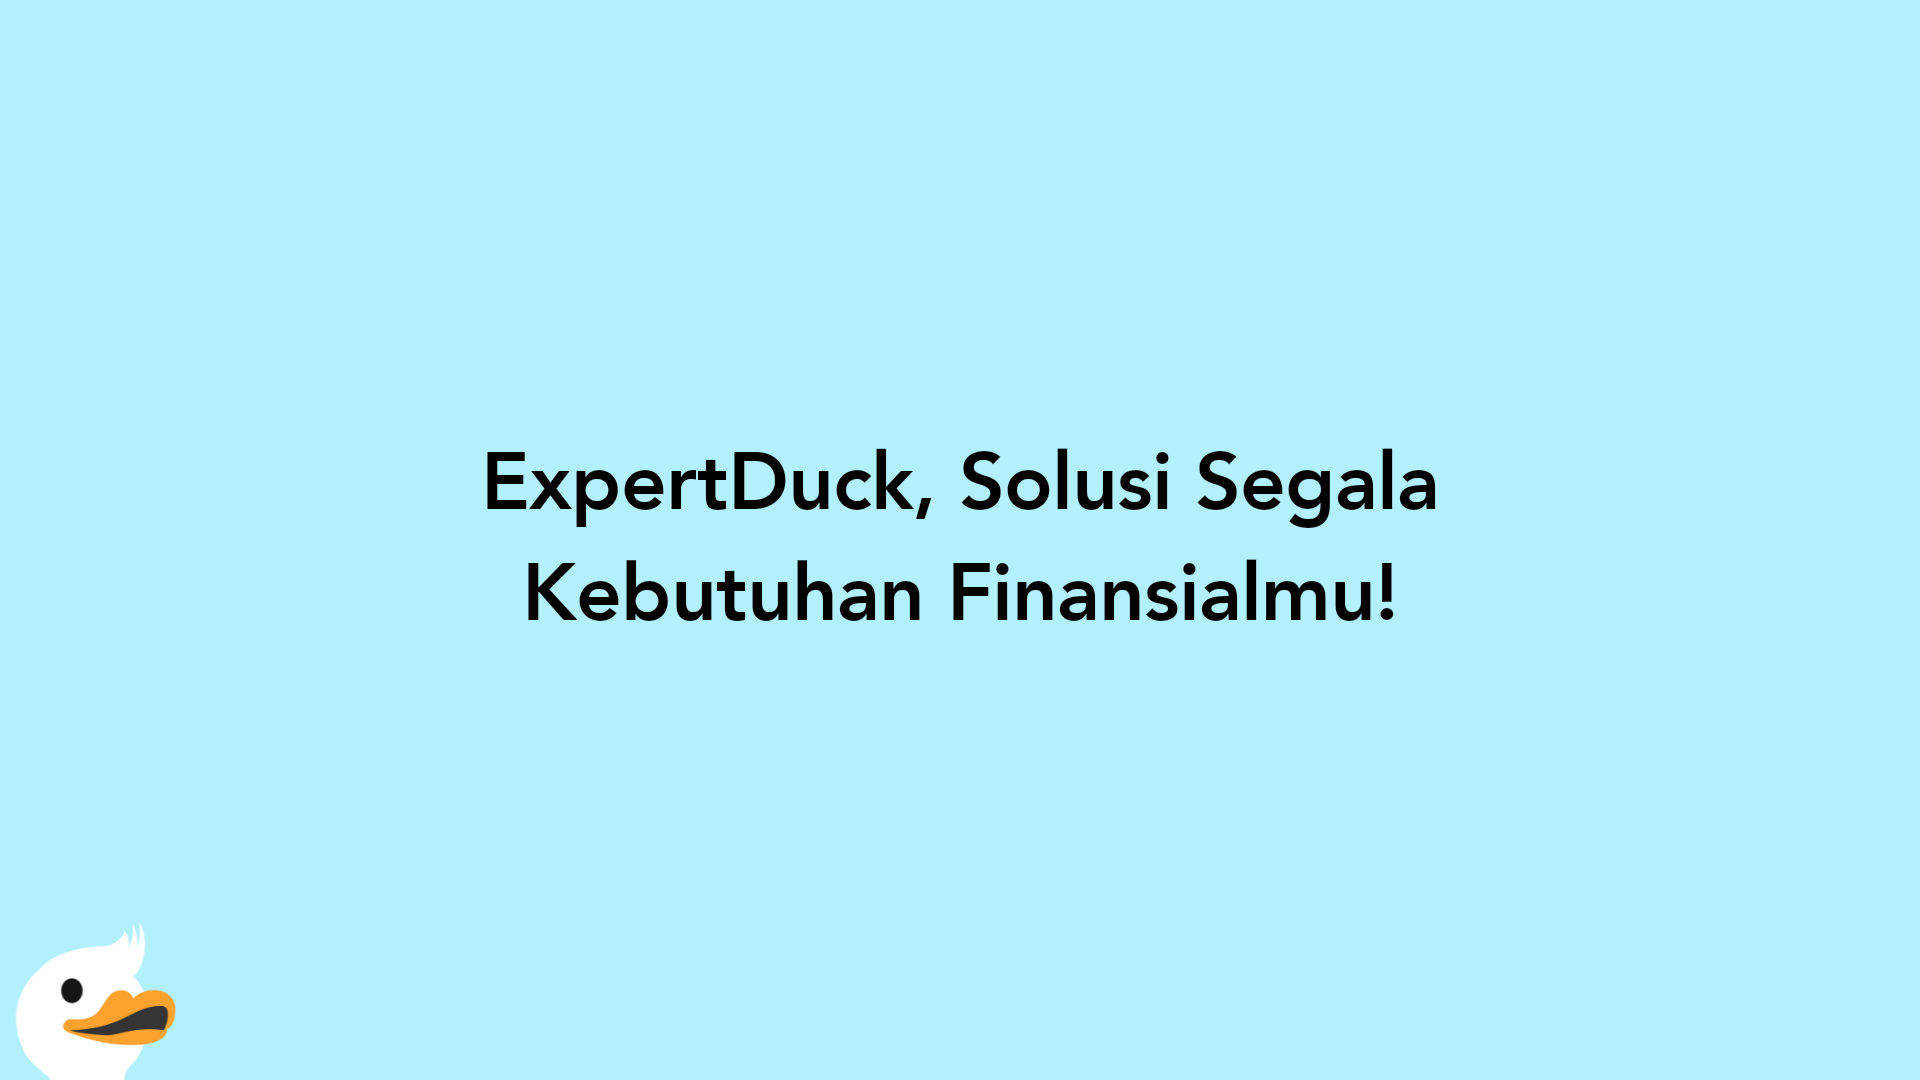 ExpertDuck, Solusi Segala Kebutuhan Finansialmu!